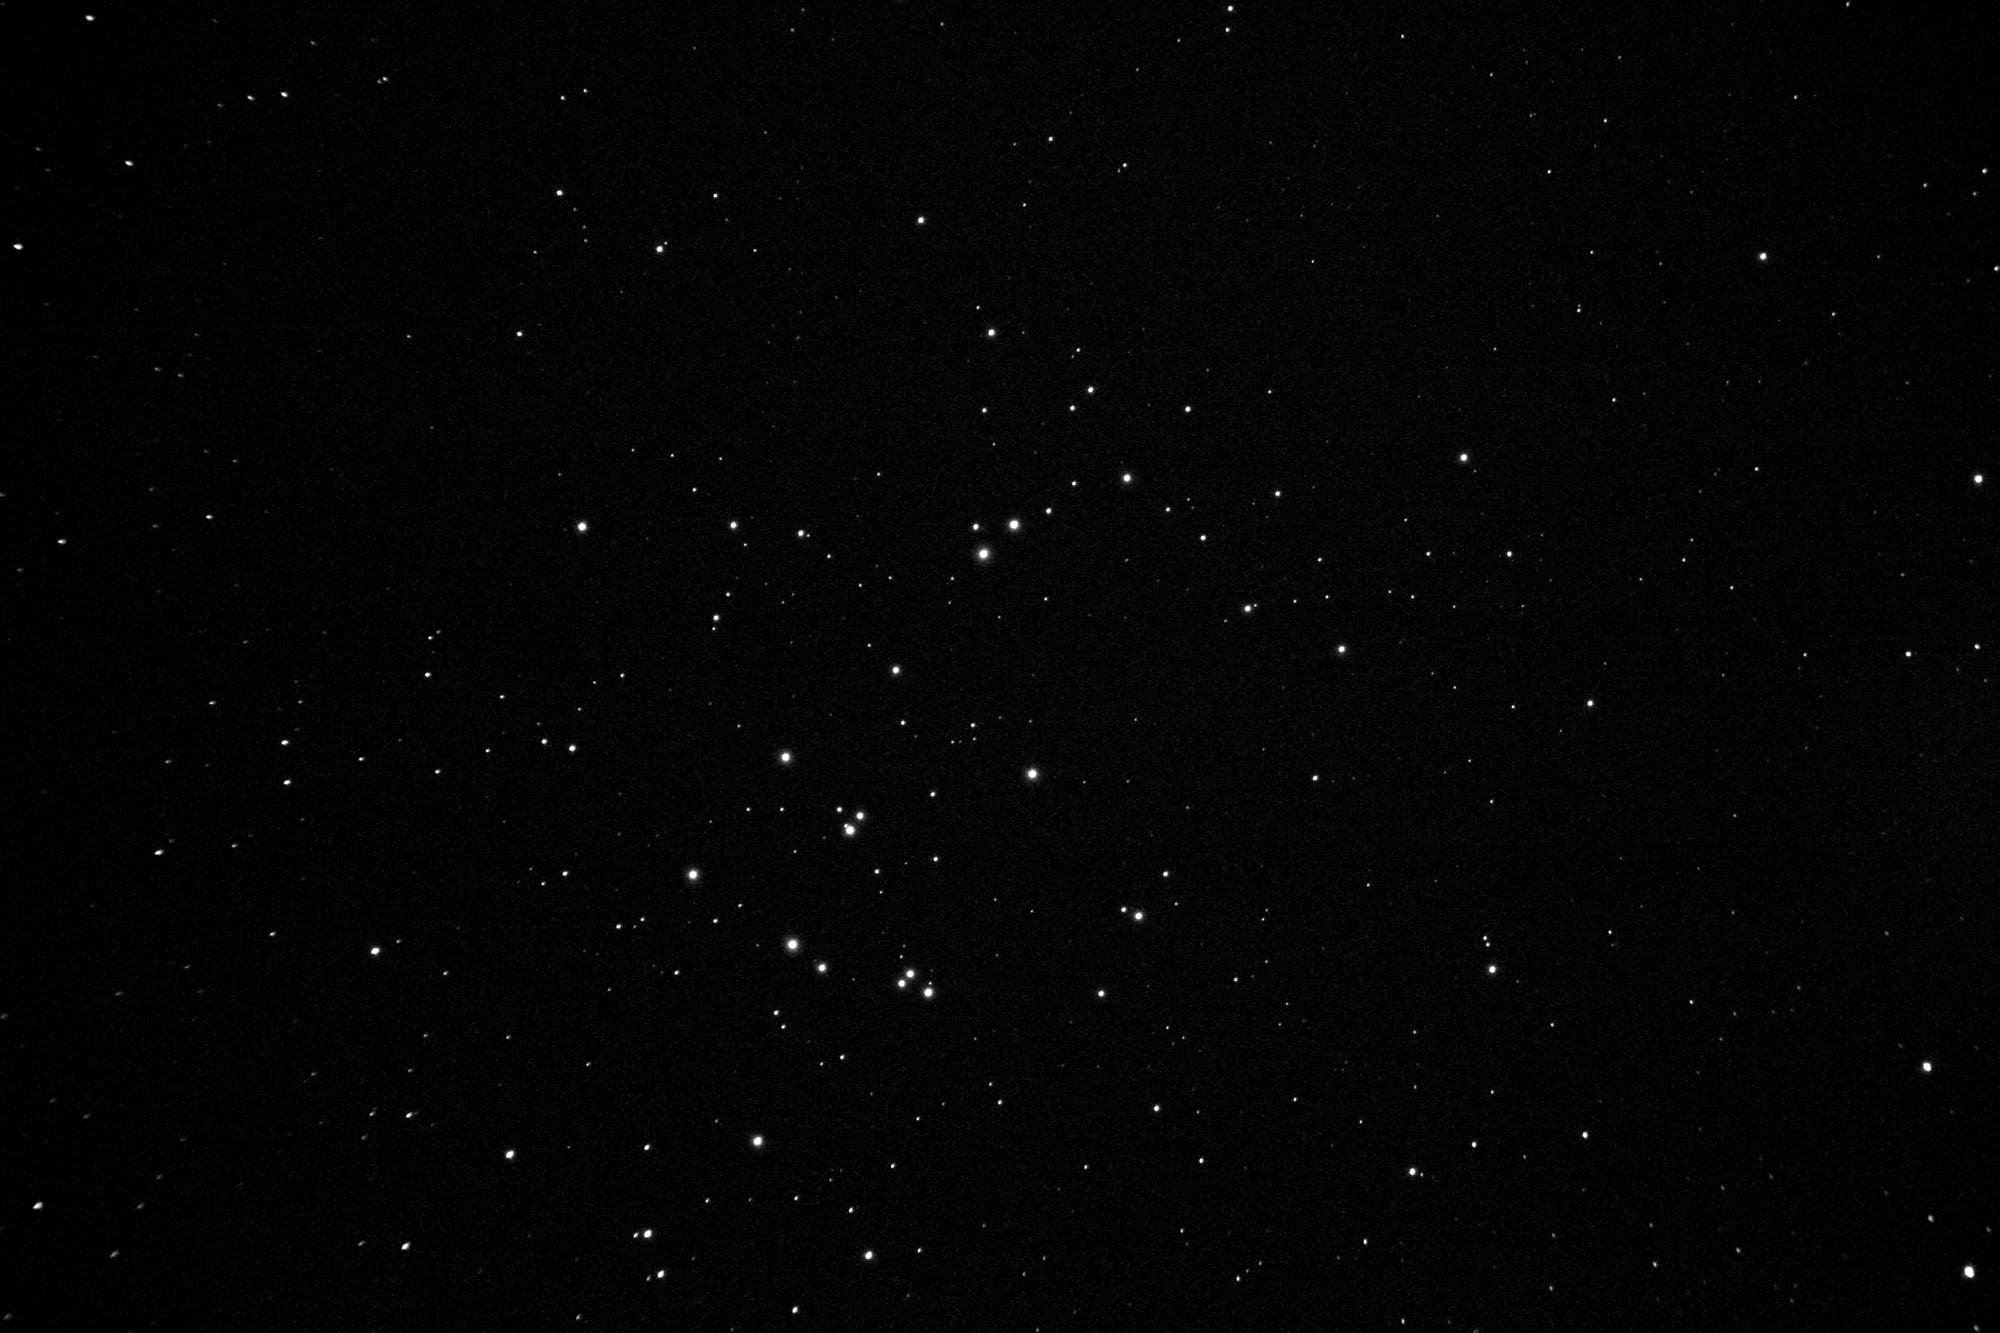 Messier 44